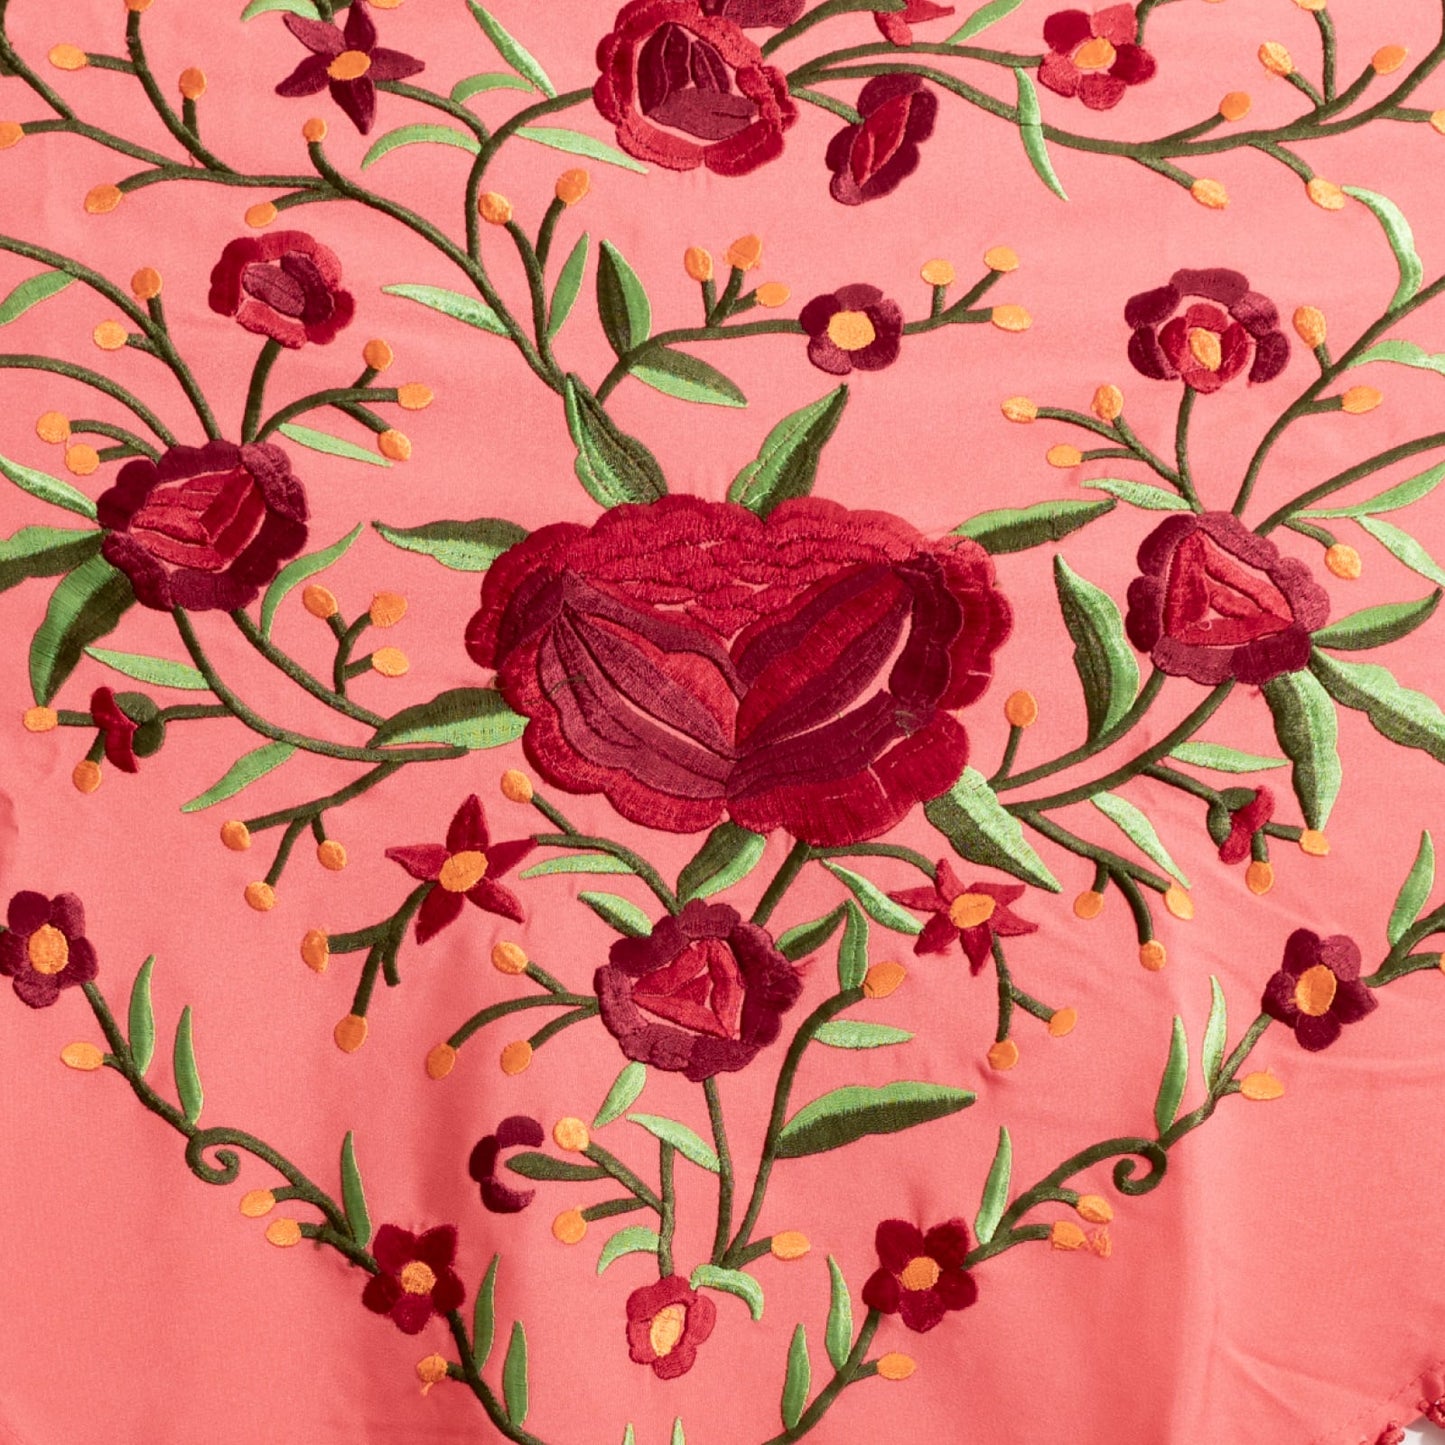 Coral & grana floral embroidered mantoncillo shawl in crespon.